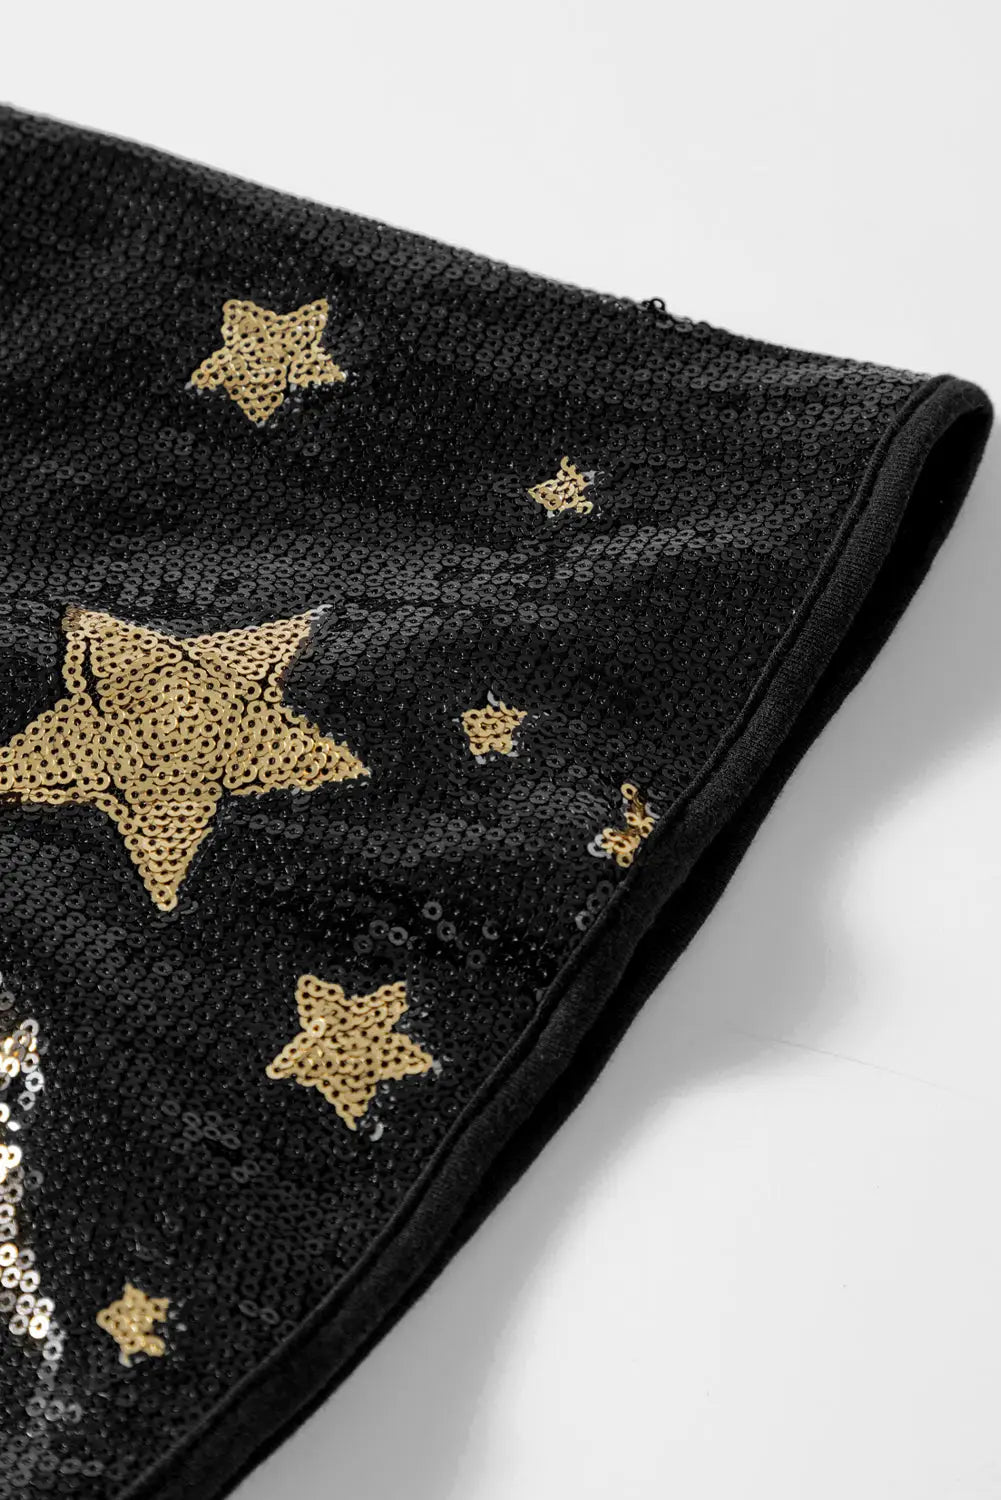 Black star sequin splicing half sleeve top - tops